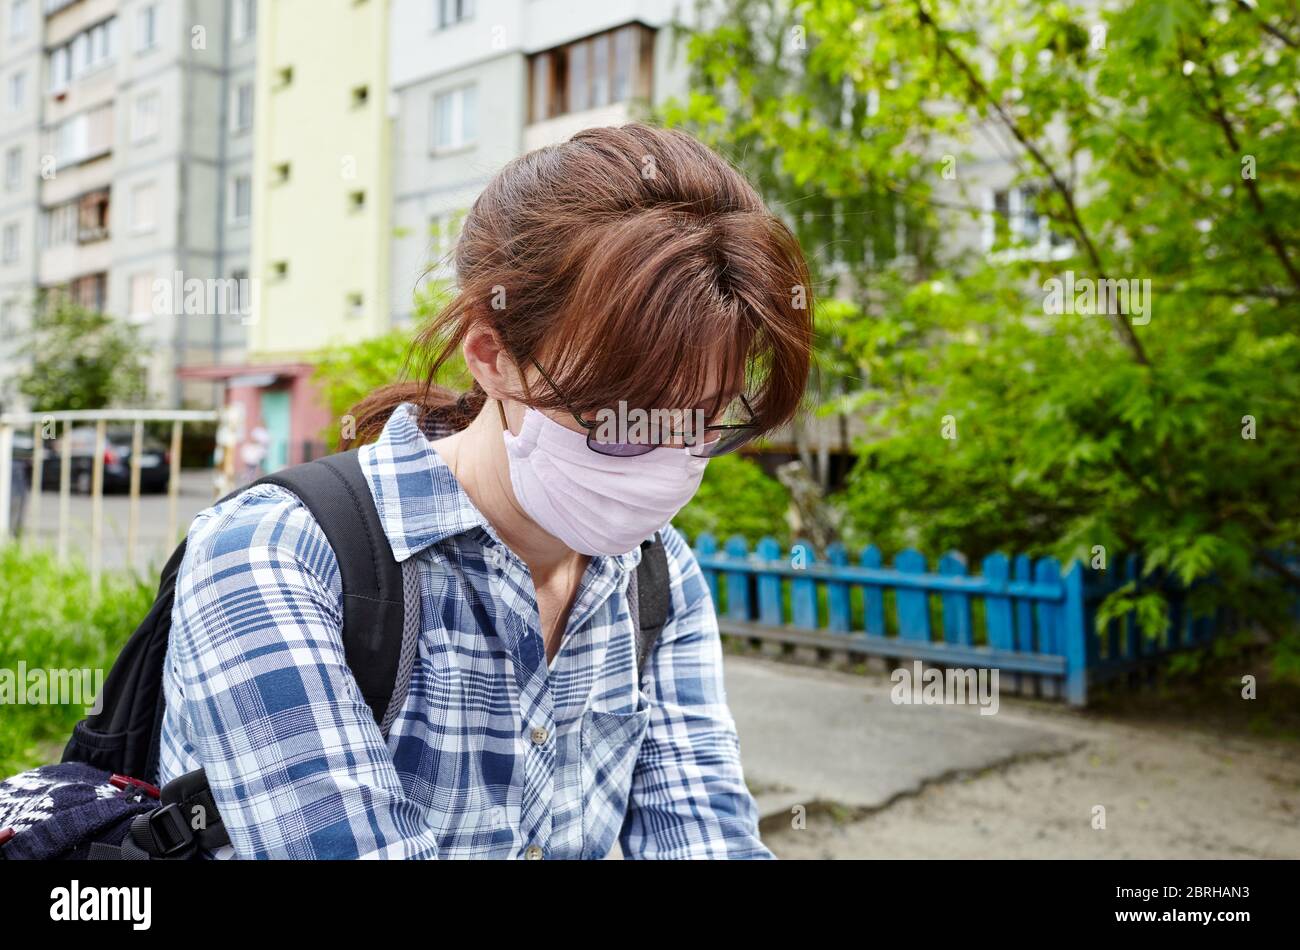 Mujer durante COVID-19 y brote de gripe con máscara de protección facial. Disfrutar de la naturaleza y el sol durante la cuarentena.concepto de coronavirus cuarentena. Foto de stock